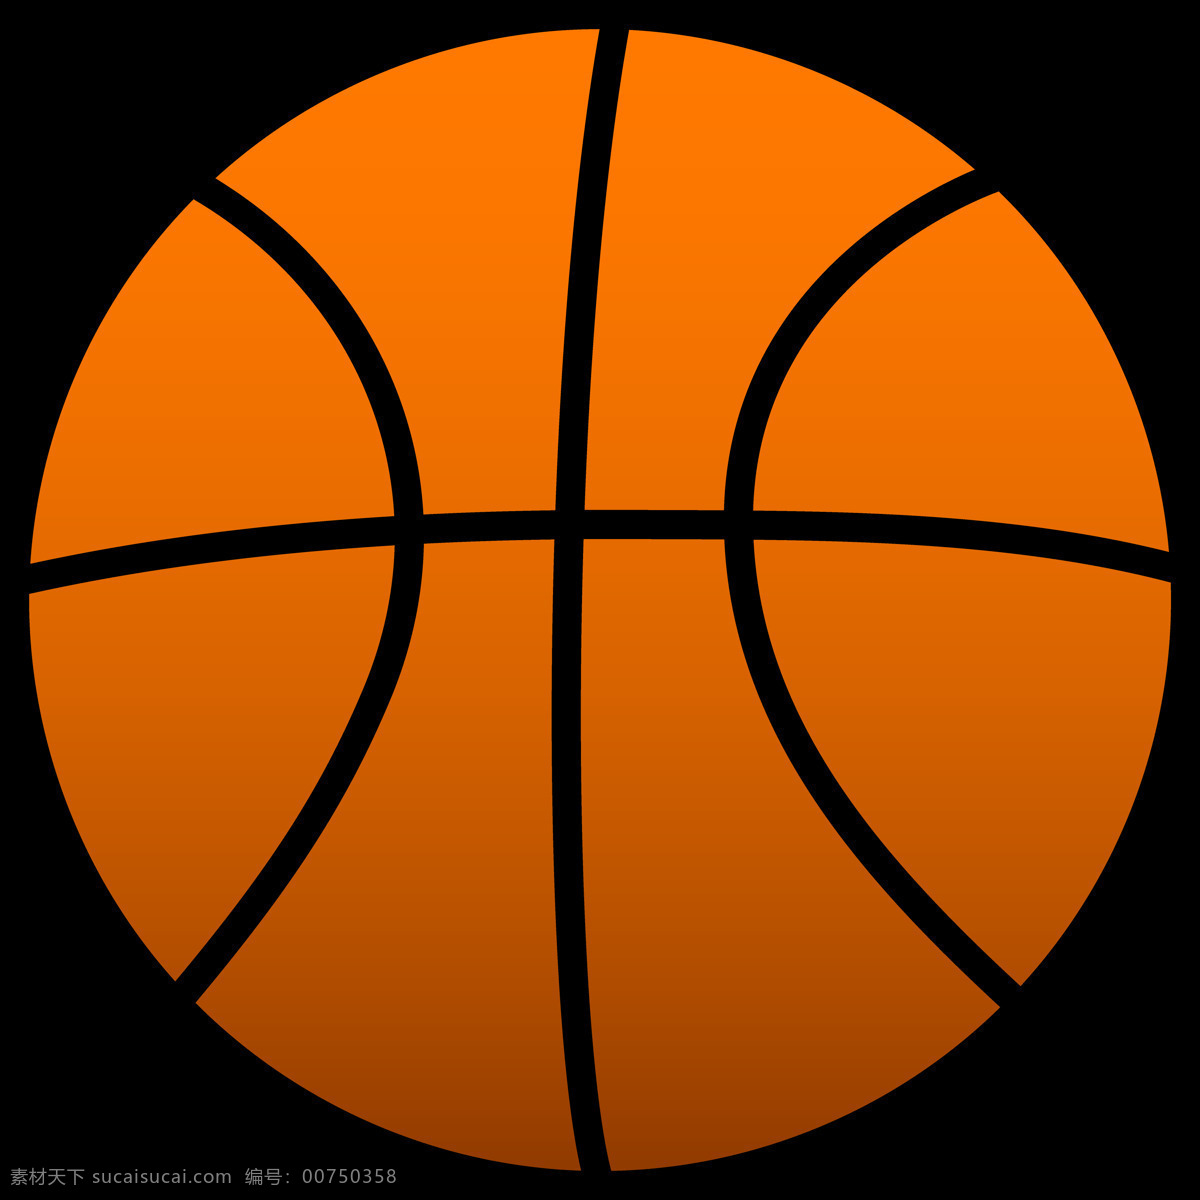 手绘 篮球 免 抠 透明 图 层 唯美 意境 篮球海报背景 背景图片 篮球卡通图片 篮球图片素材 篮球高清大图 篮球素材 篮球图片 篮球照片 篮球海报素材